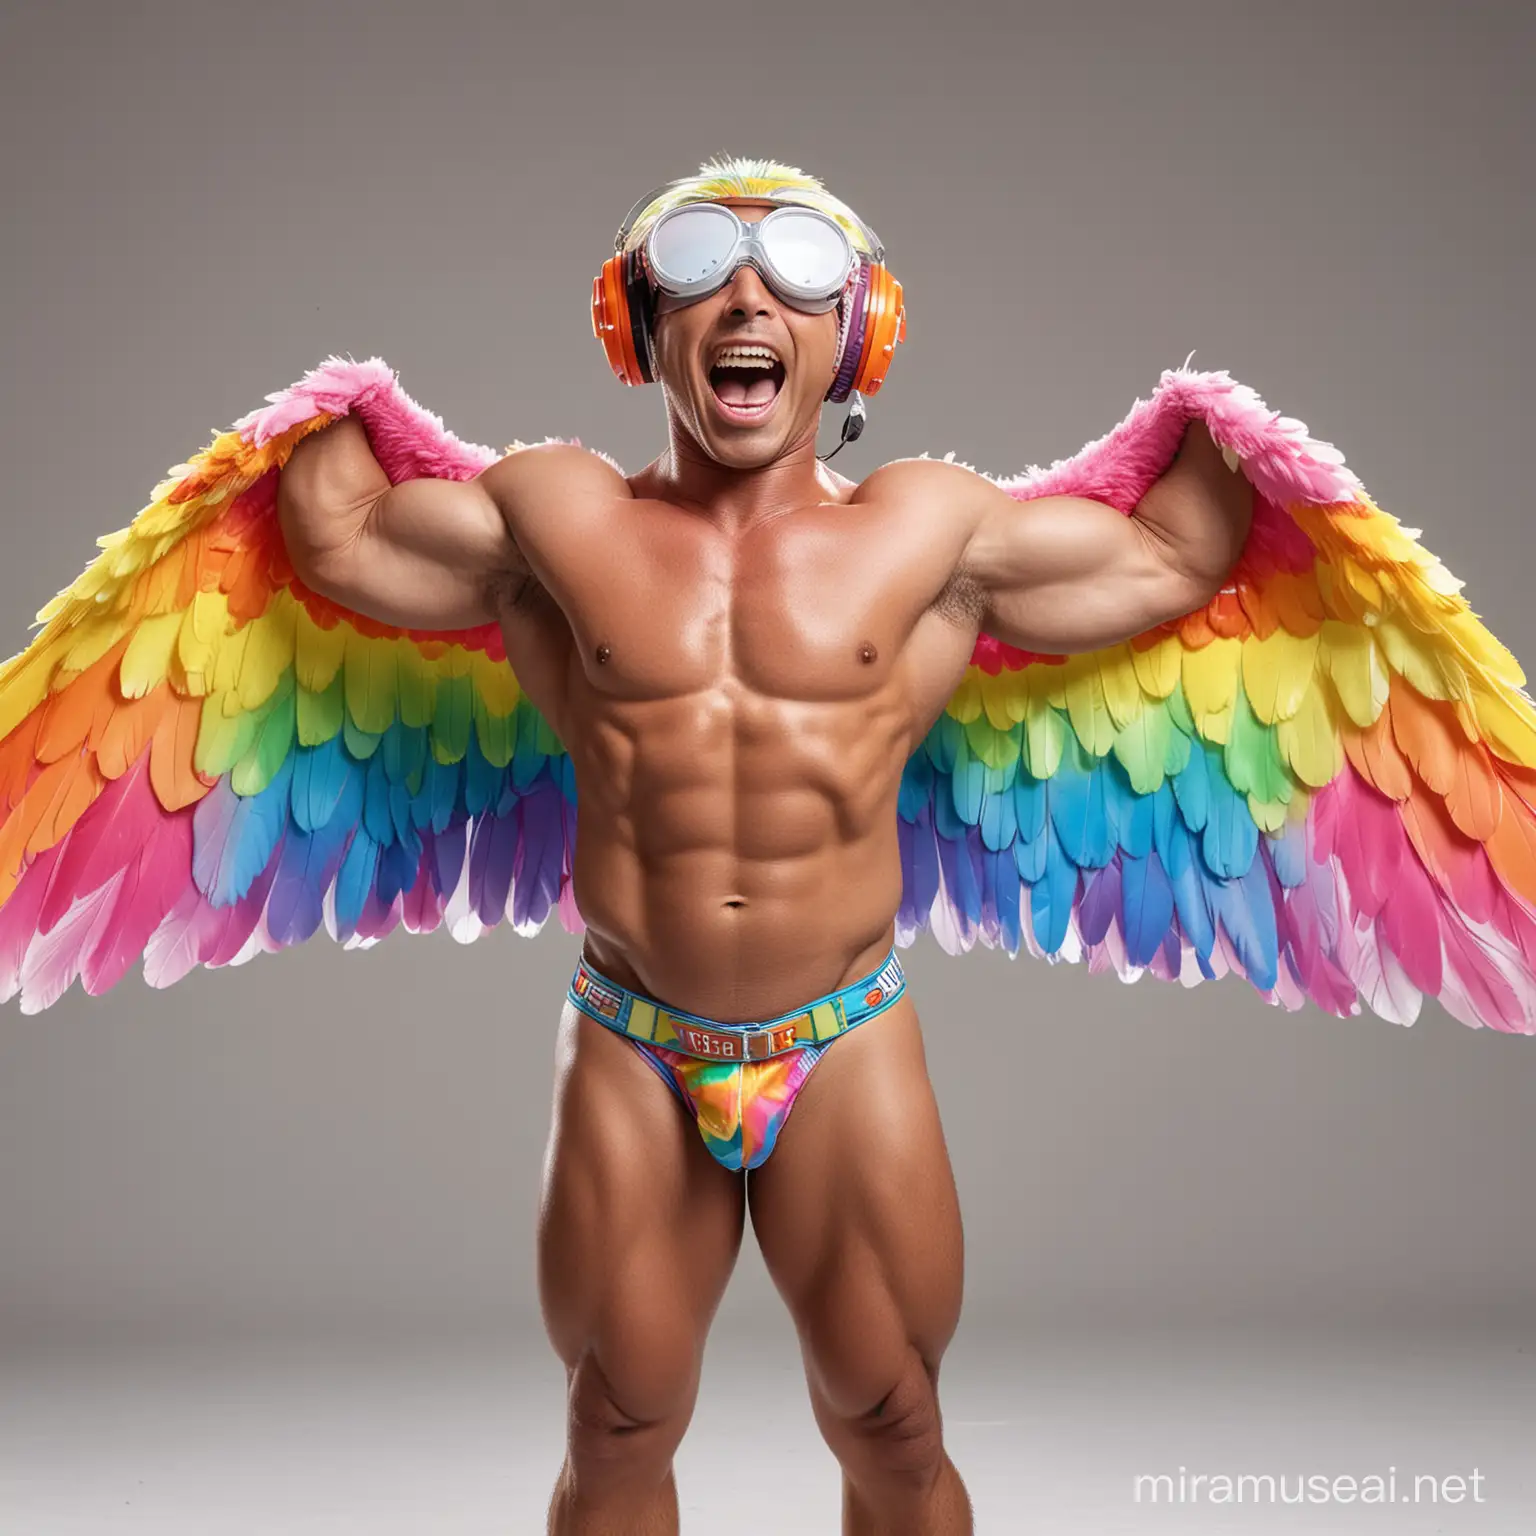 Muscular 40s Bodybuilder Flexing in Rainbow Eagle Wings Jacket